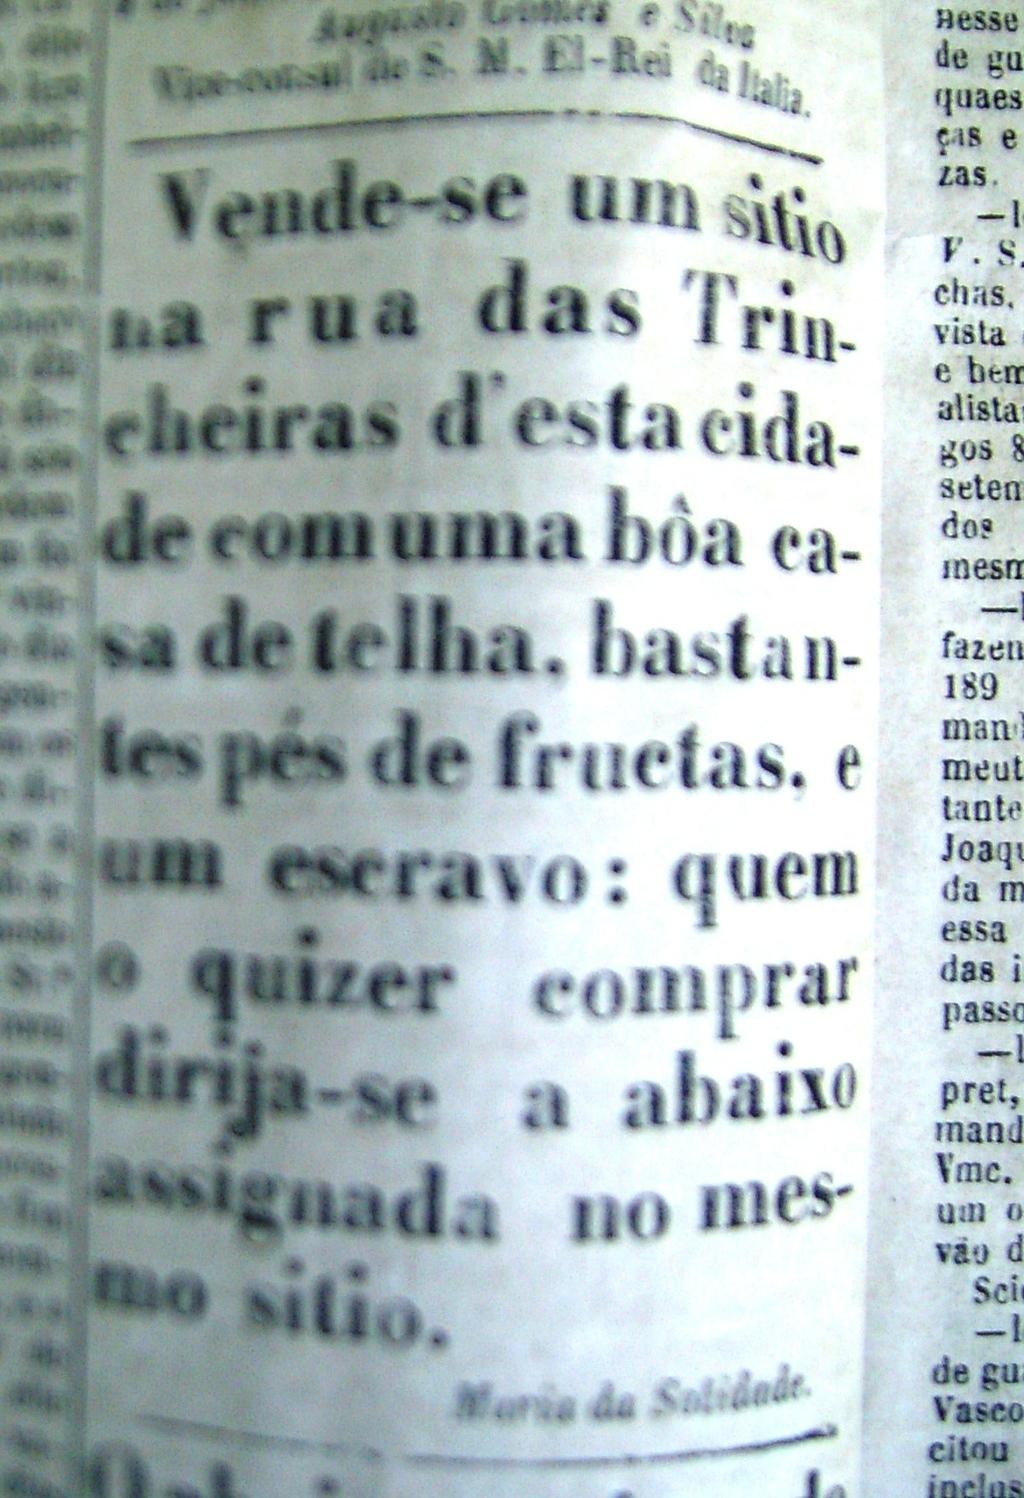 Anúncio B - Jornal da Parahyba, 07 de Janeiro 1864 Vende-se um sitio na rua das Trin- cheiras d esta cida- de com uma bôa ca- sa de telha, bastan- tes pés de fructas, e um escravo: quem o quizer